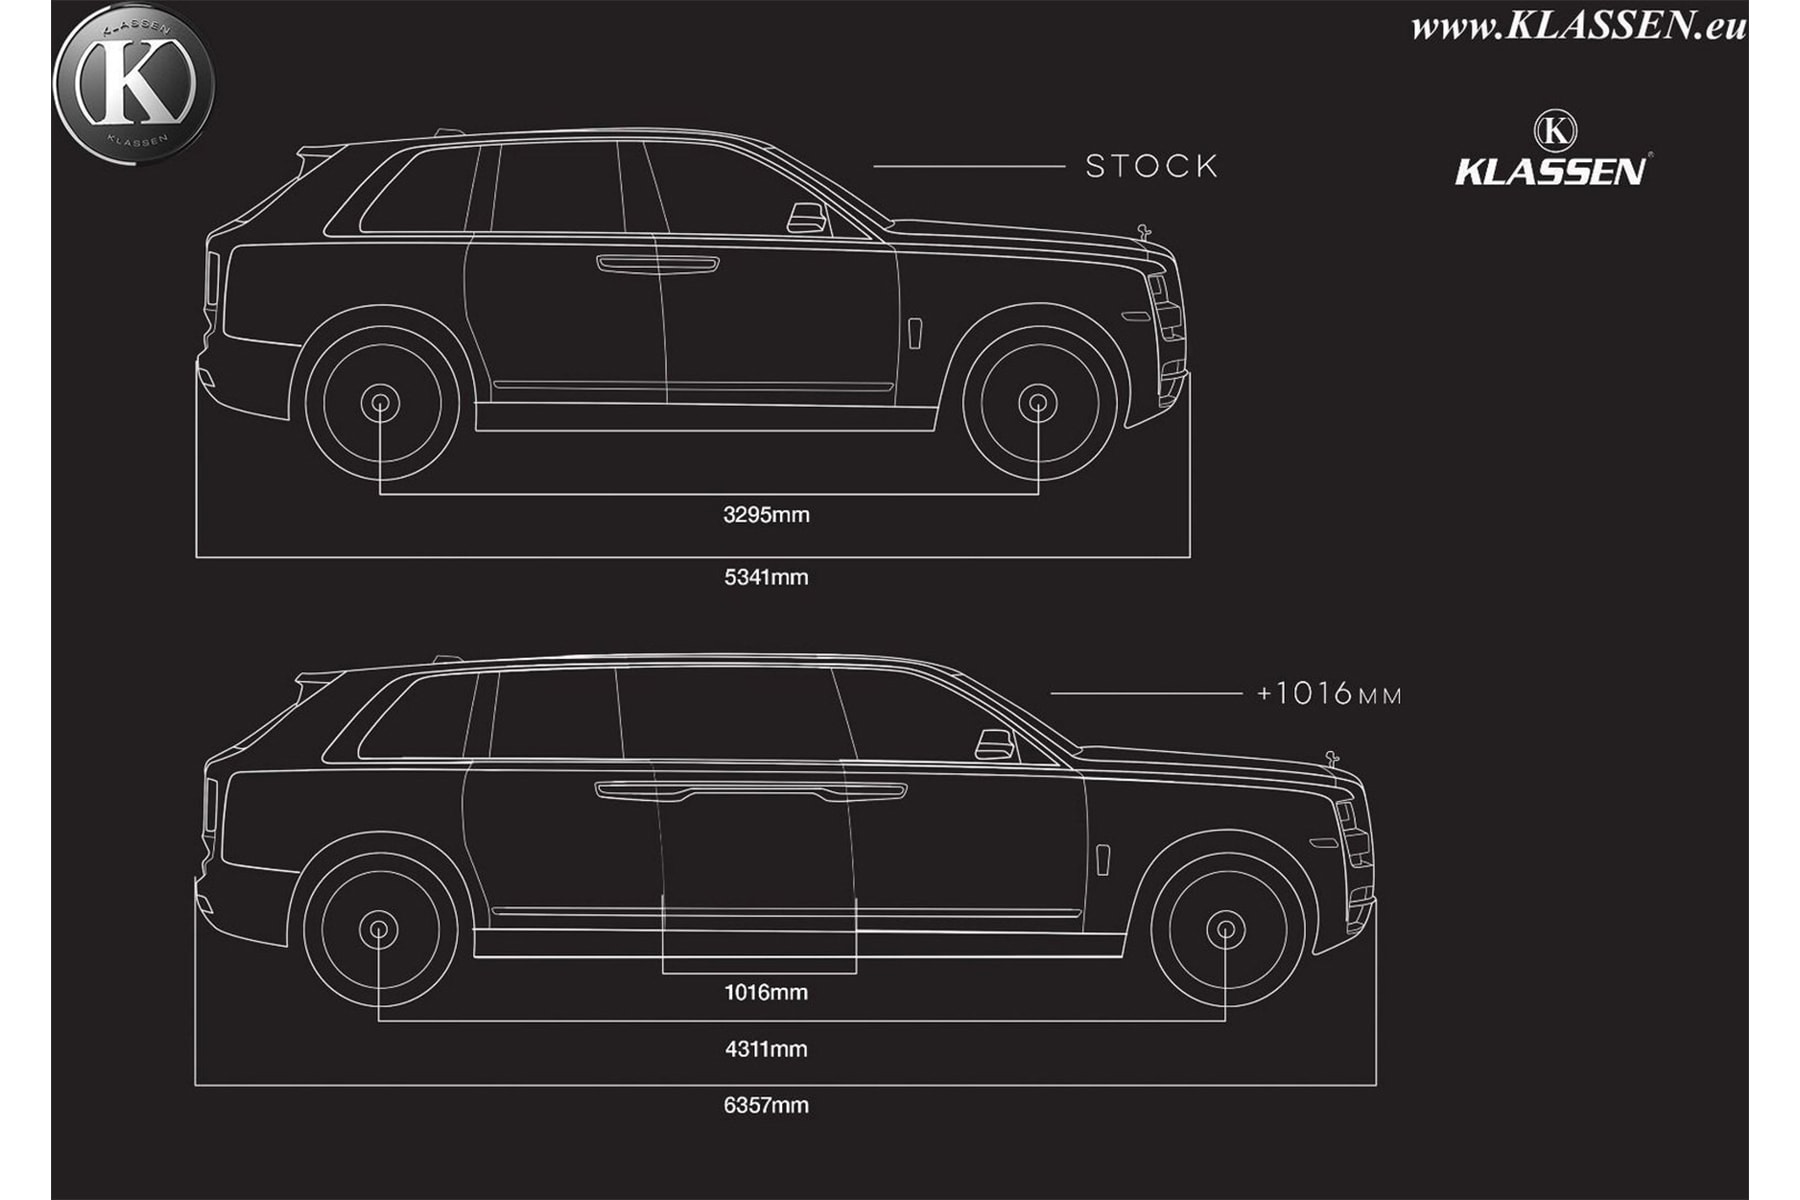 ロールス・ロイス SUV カリナンが防弾 リムジン 仕様 アップデート 登場 Rolls-Royce Klassen 車 HYPEBEAST ハイプビースト